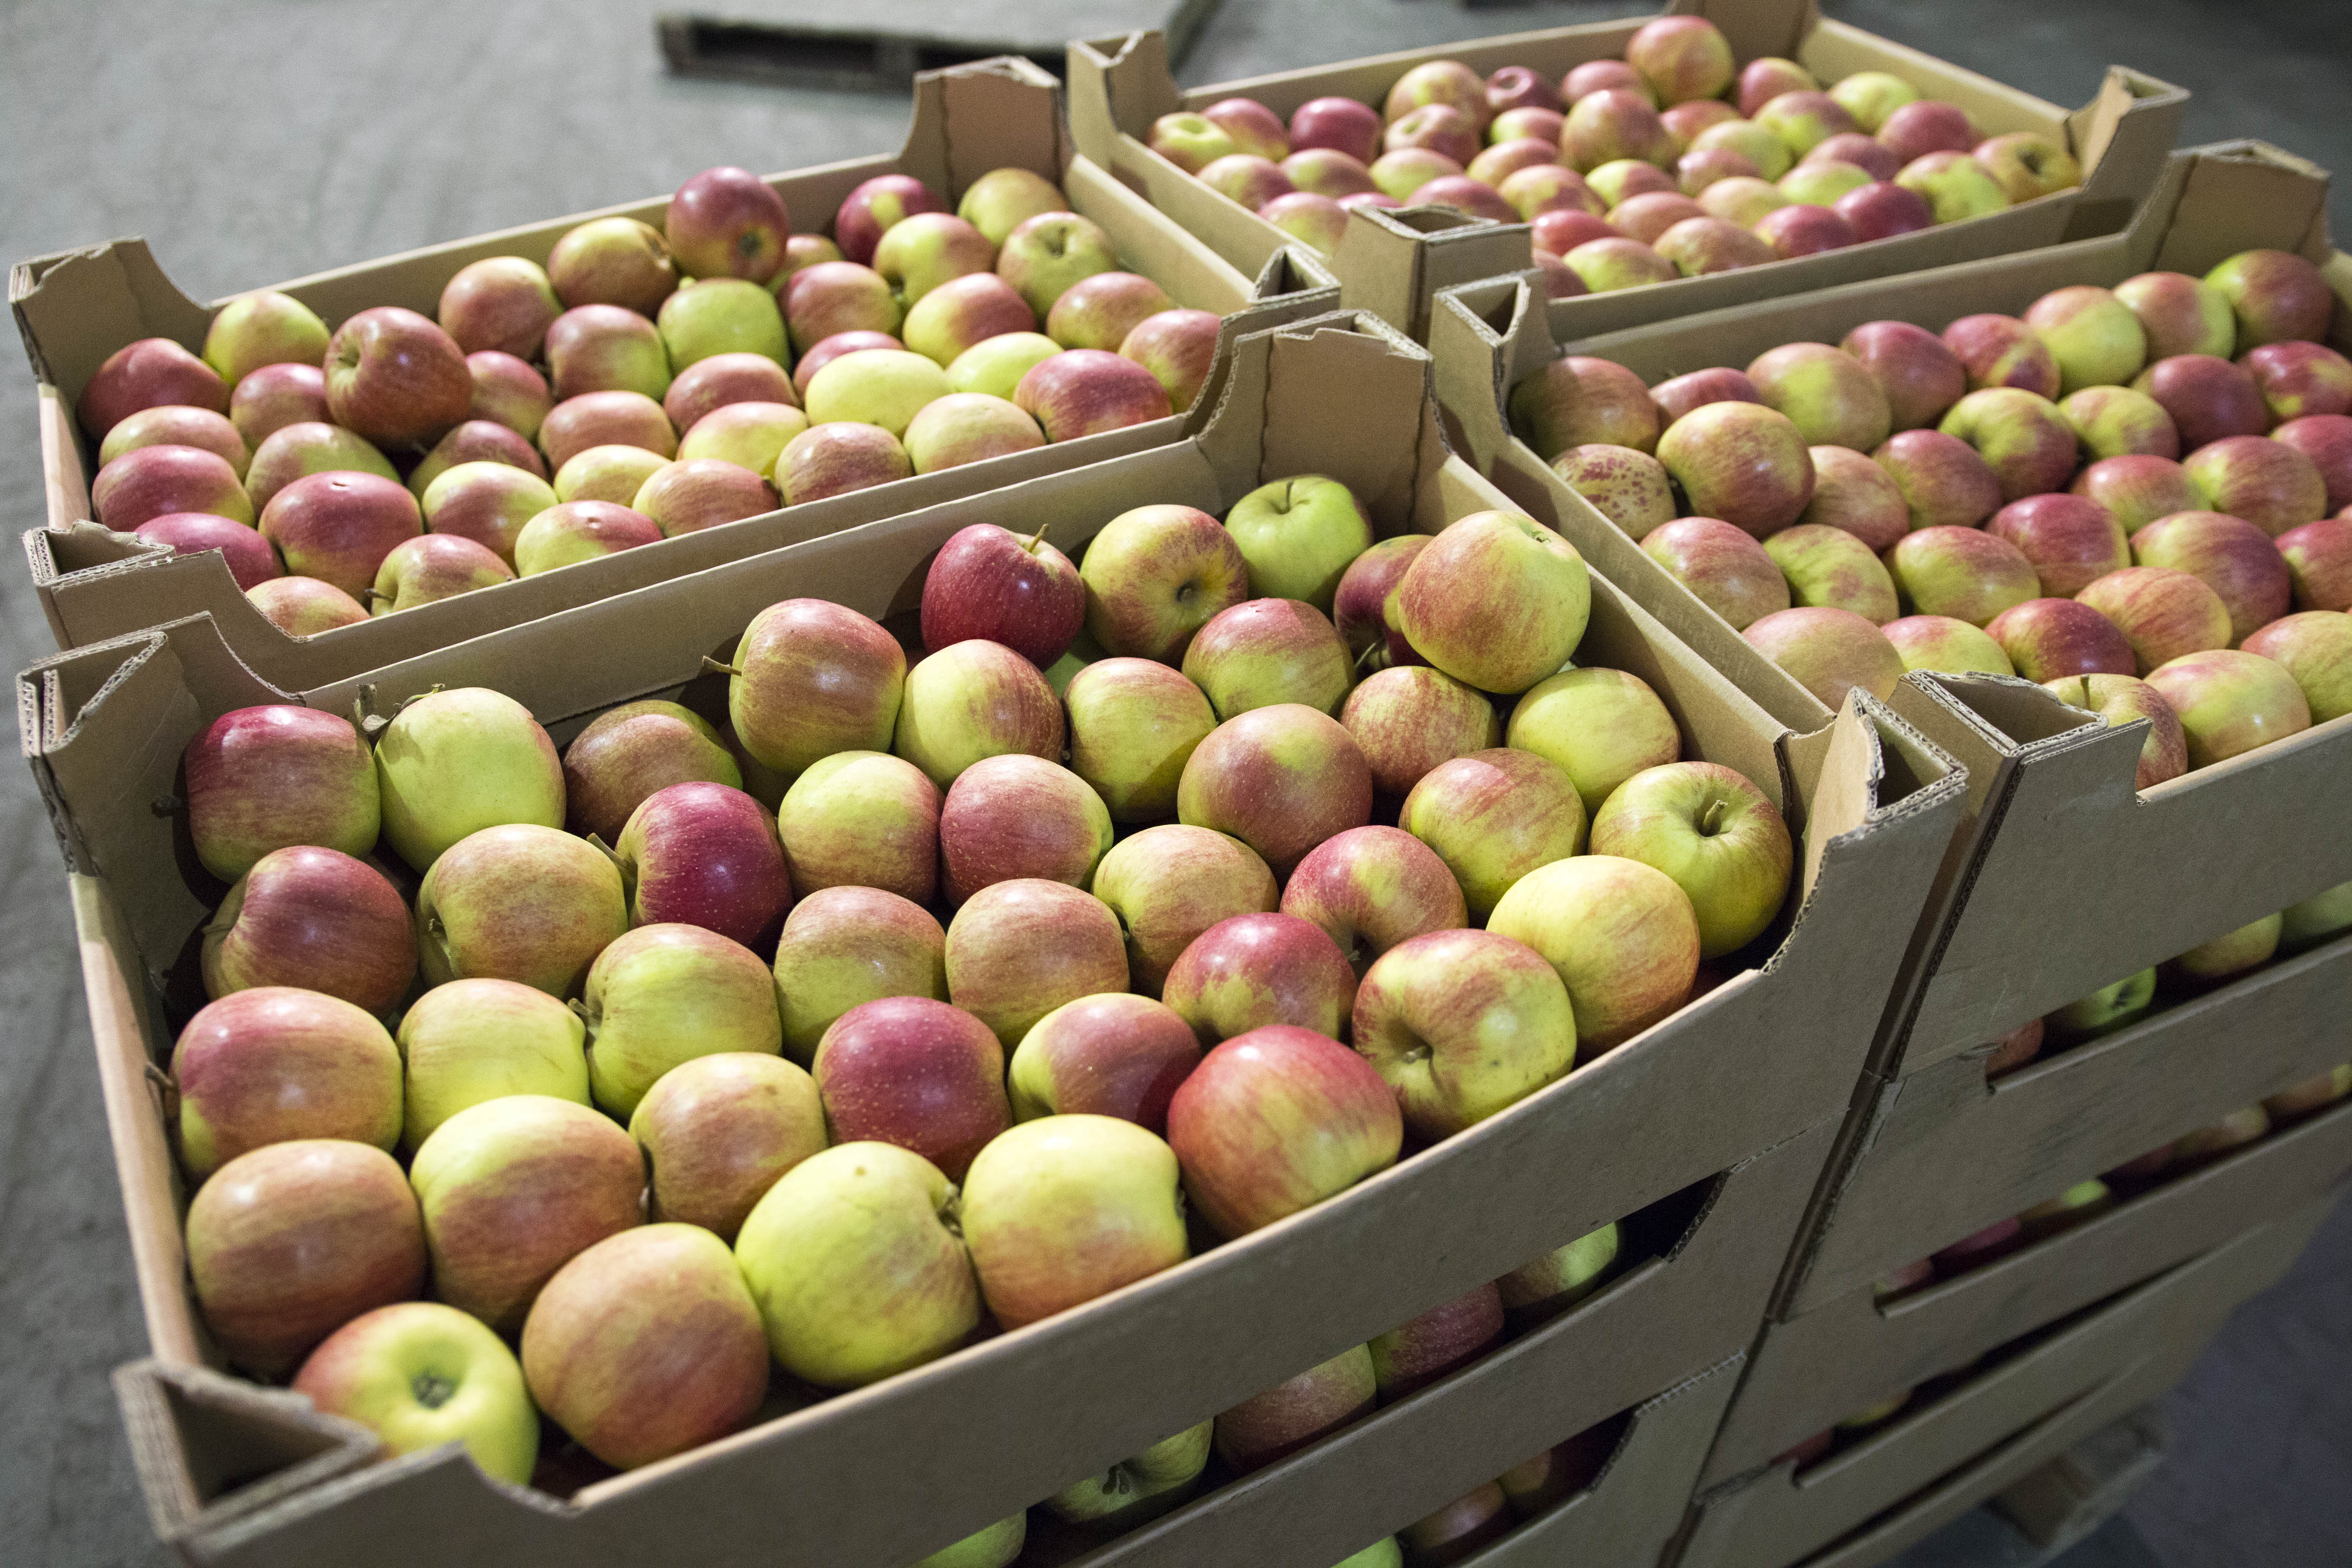 Брянские таможенники выявили свыше 100 тонн яблок без документов